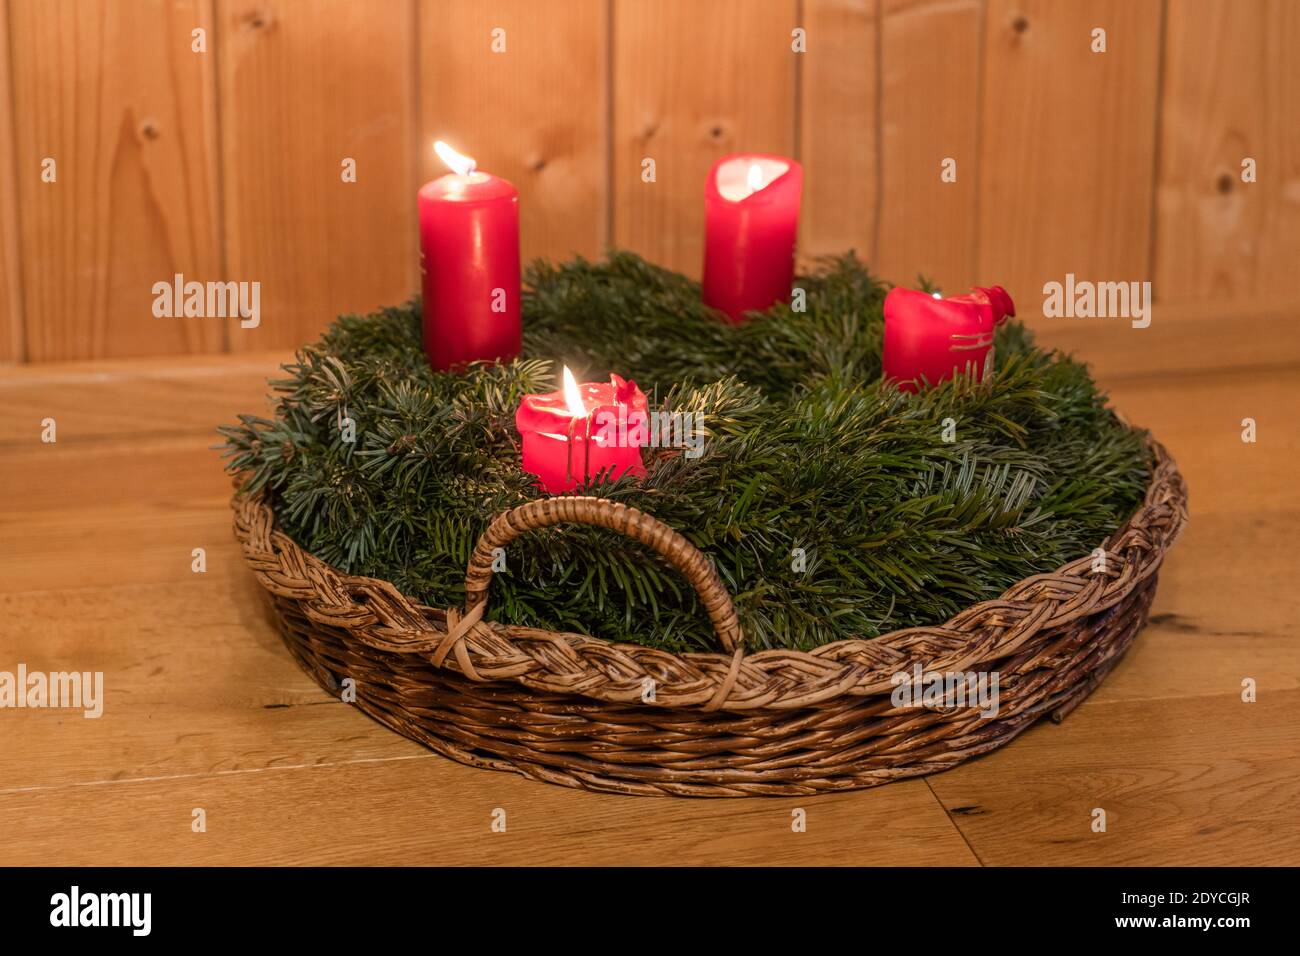 Advent - Adventare - Ankunft: Eine Kerze für vier Advent-Sonntage